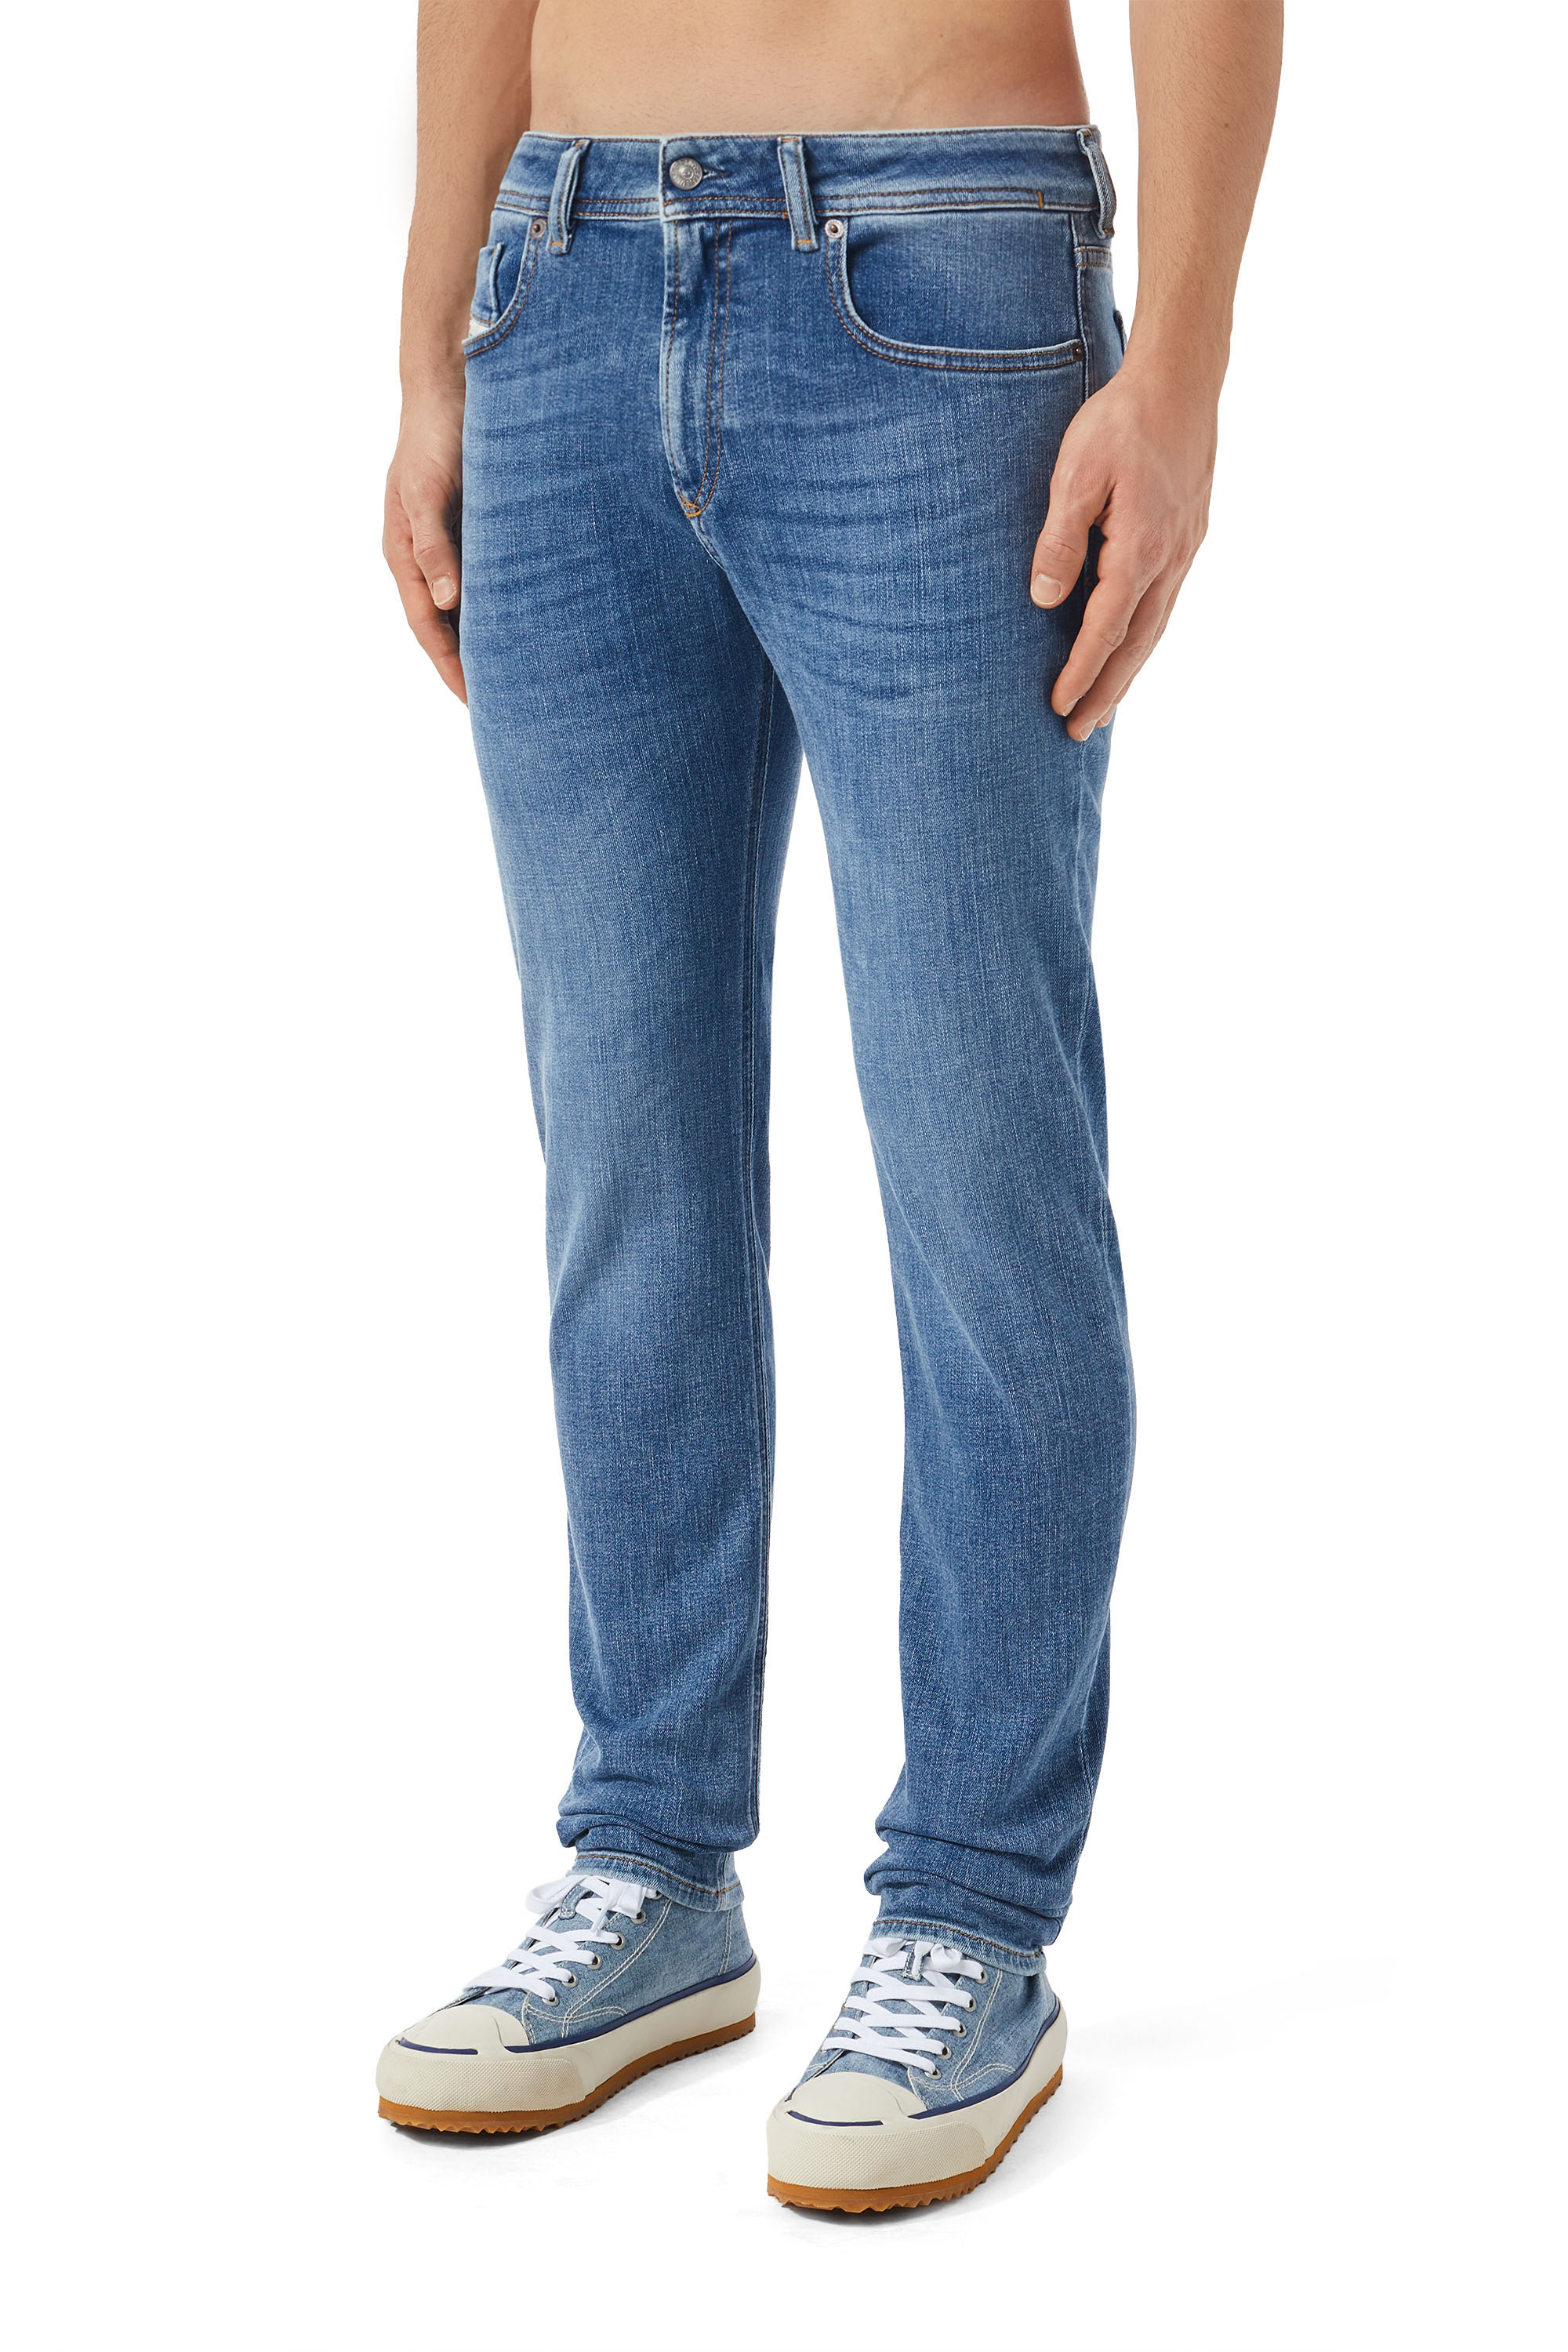 Diesel - Skinny Jeans 1979 Sleenker 09C01,  - Image 4